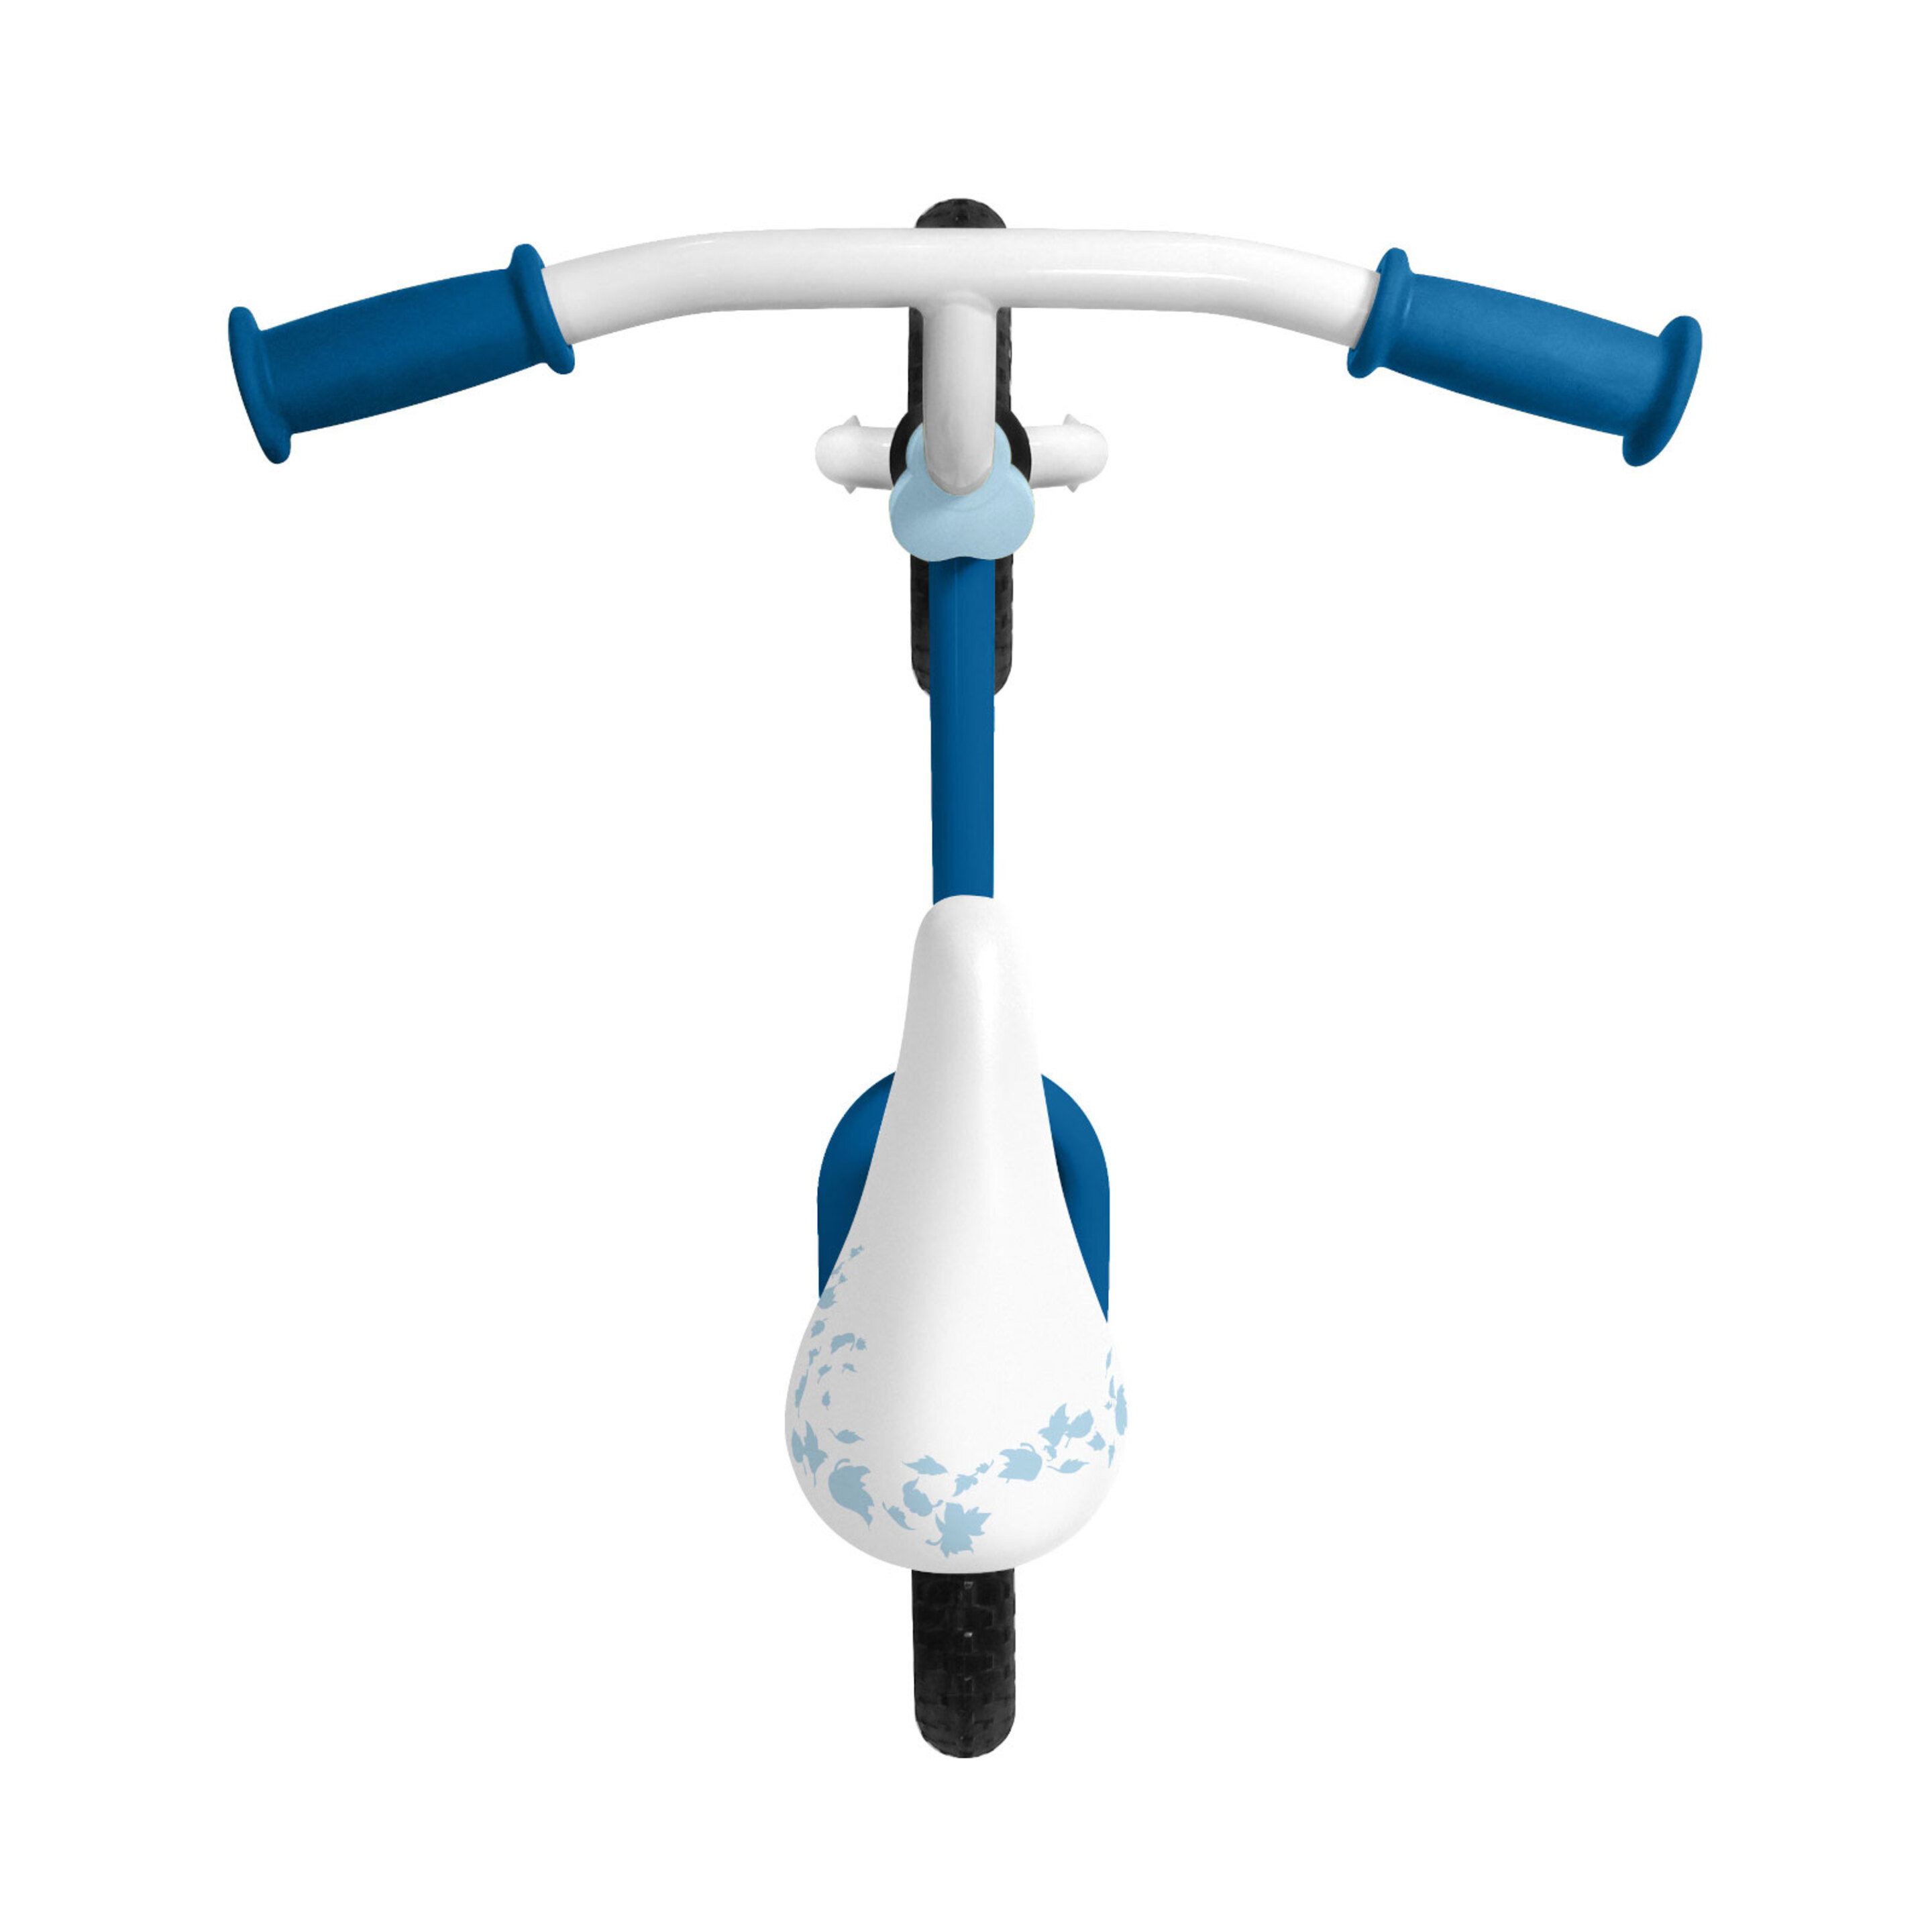 Bicicleta Equilibrio 10'' Frozen 2-4 Años  MKP